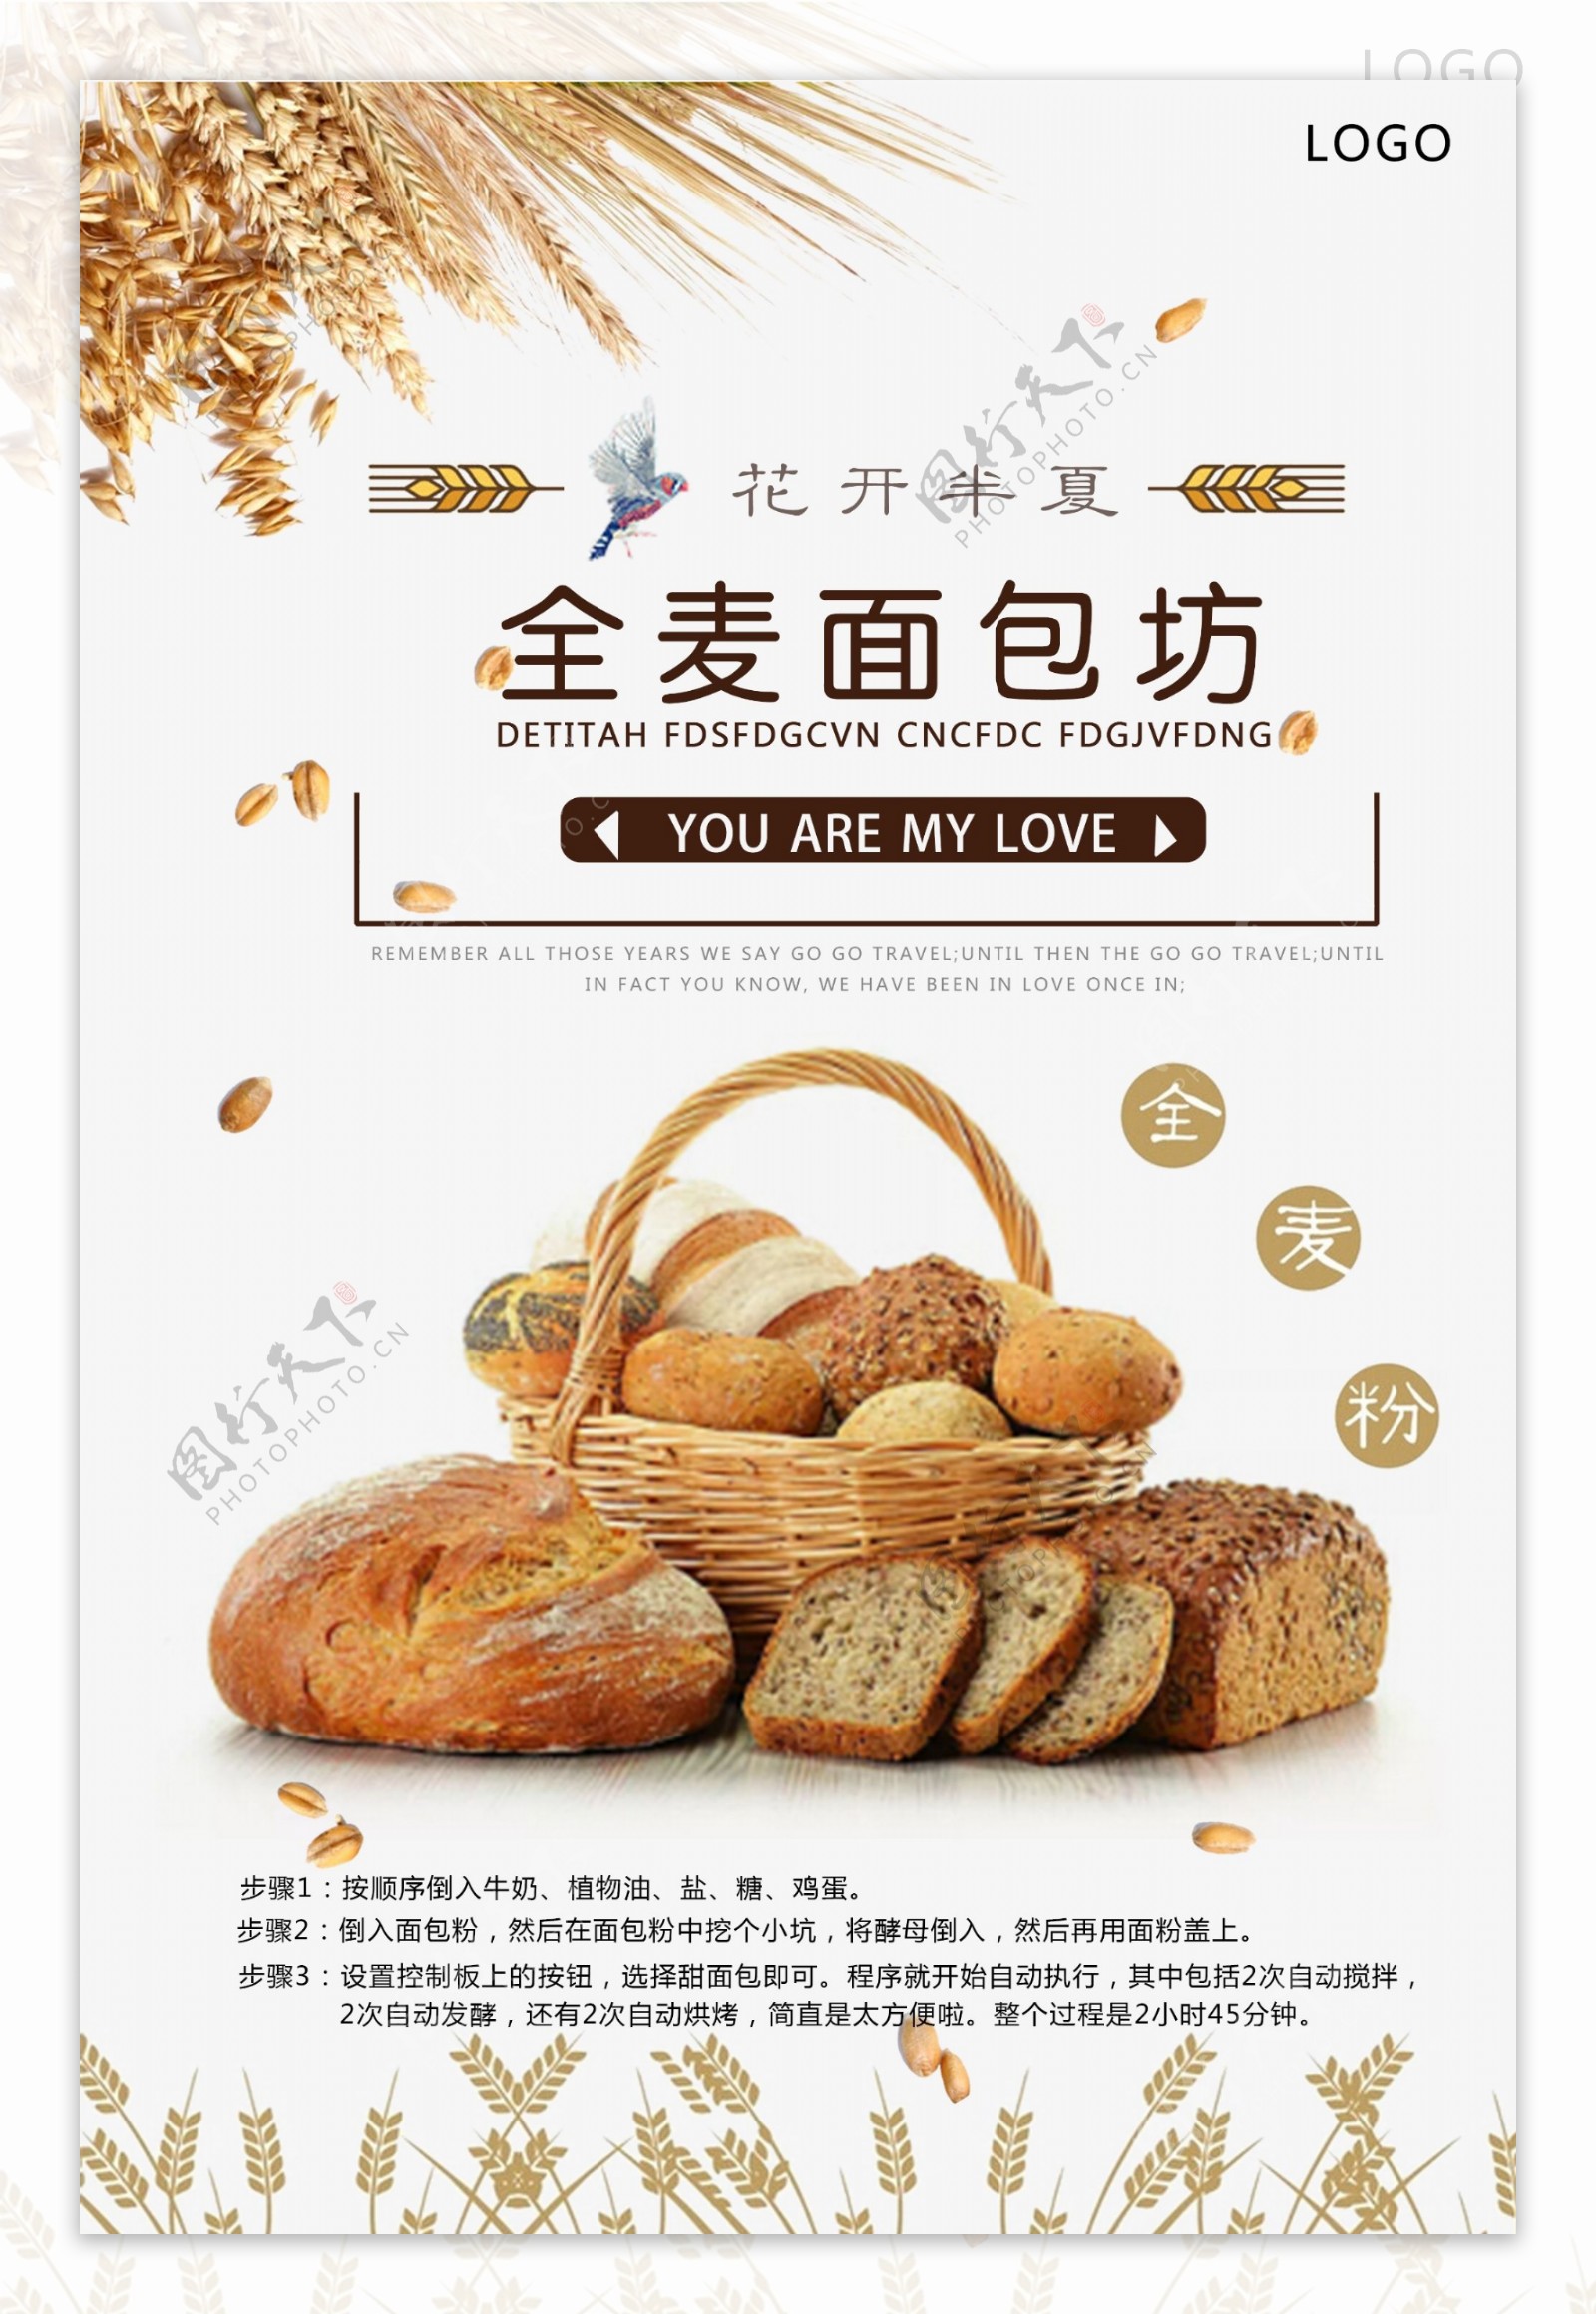 面包房海报